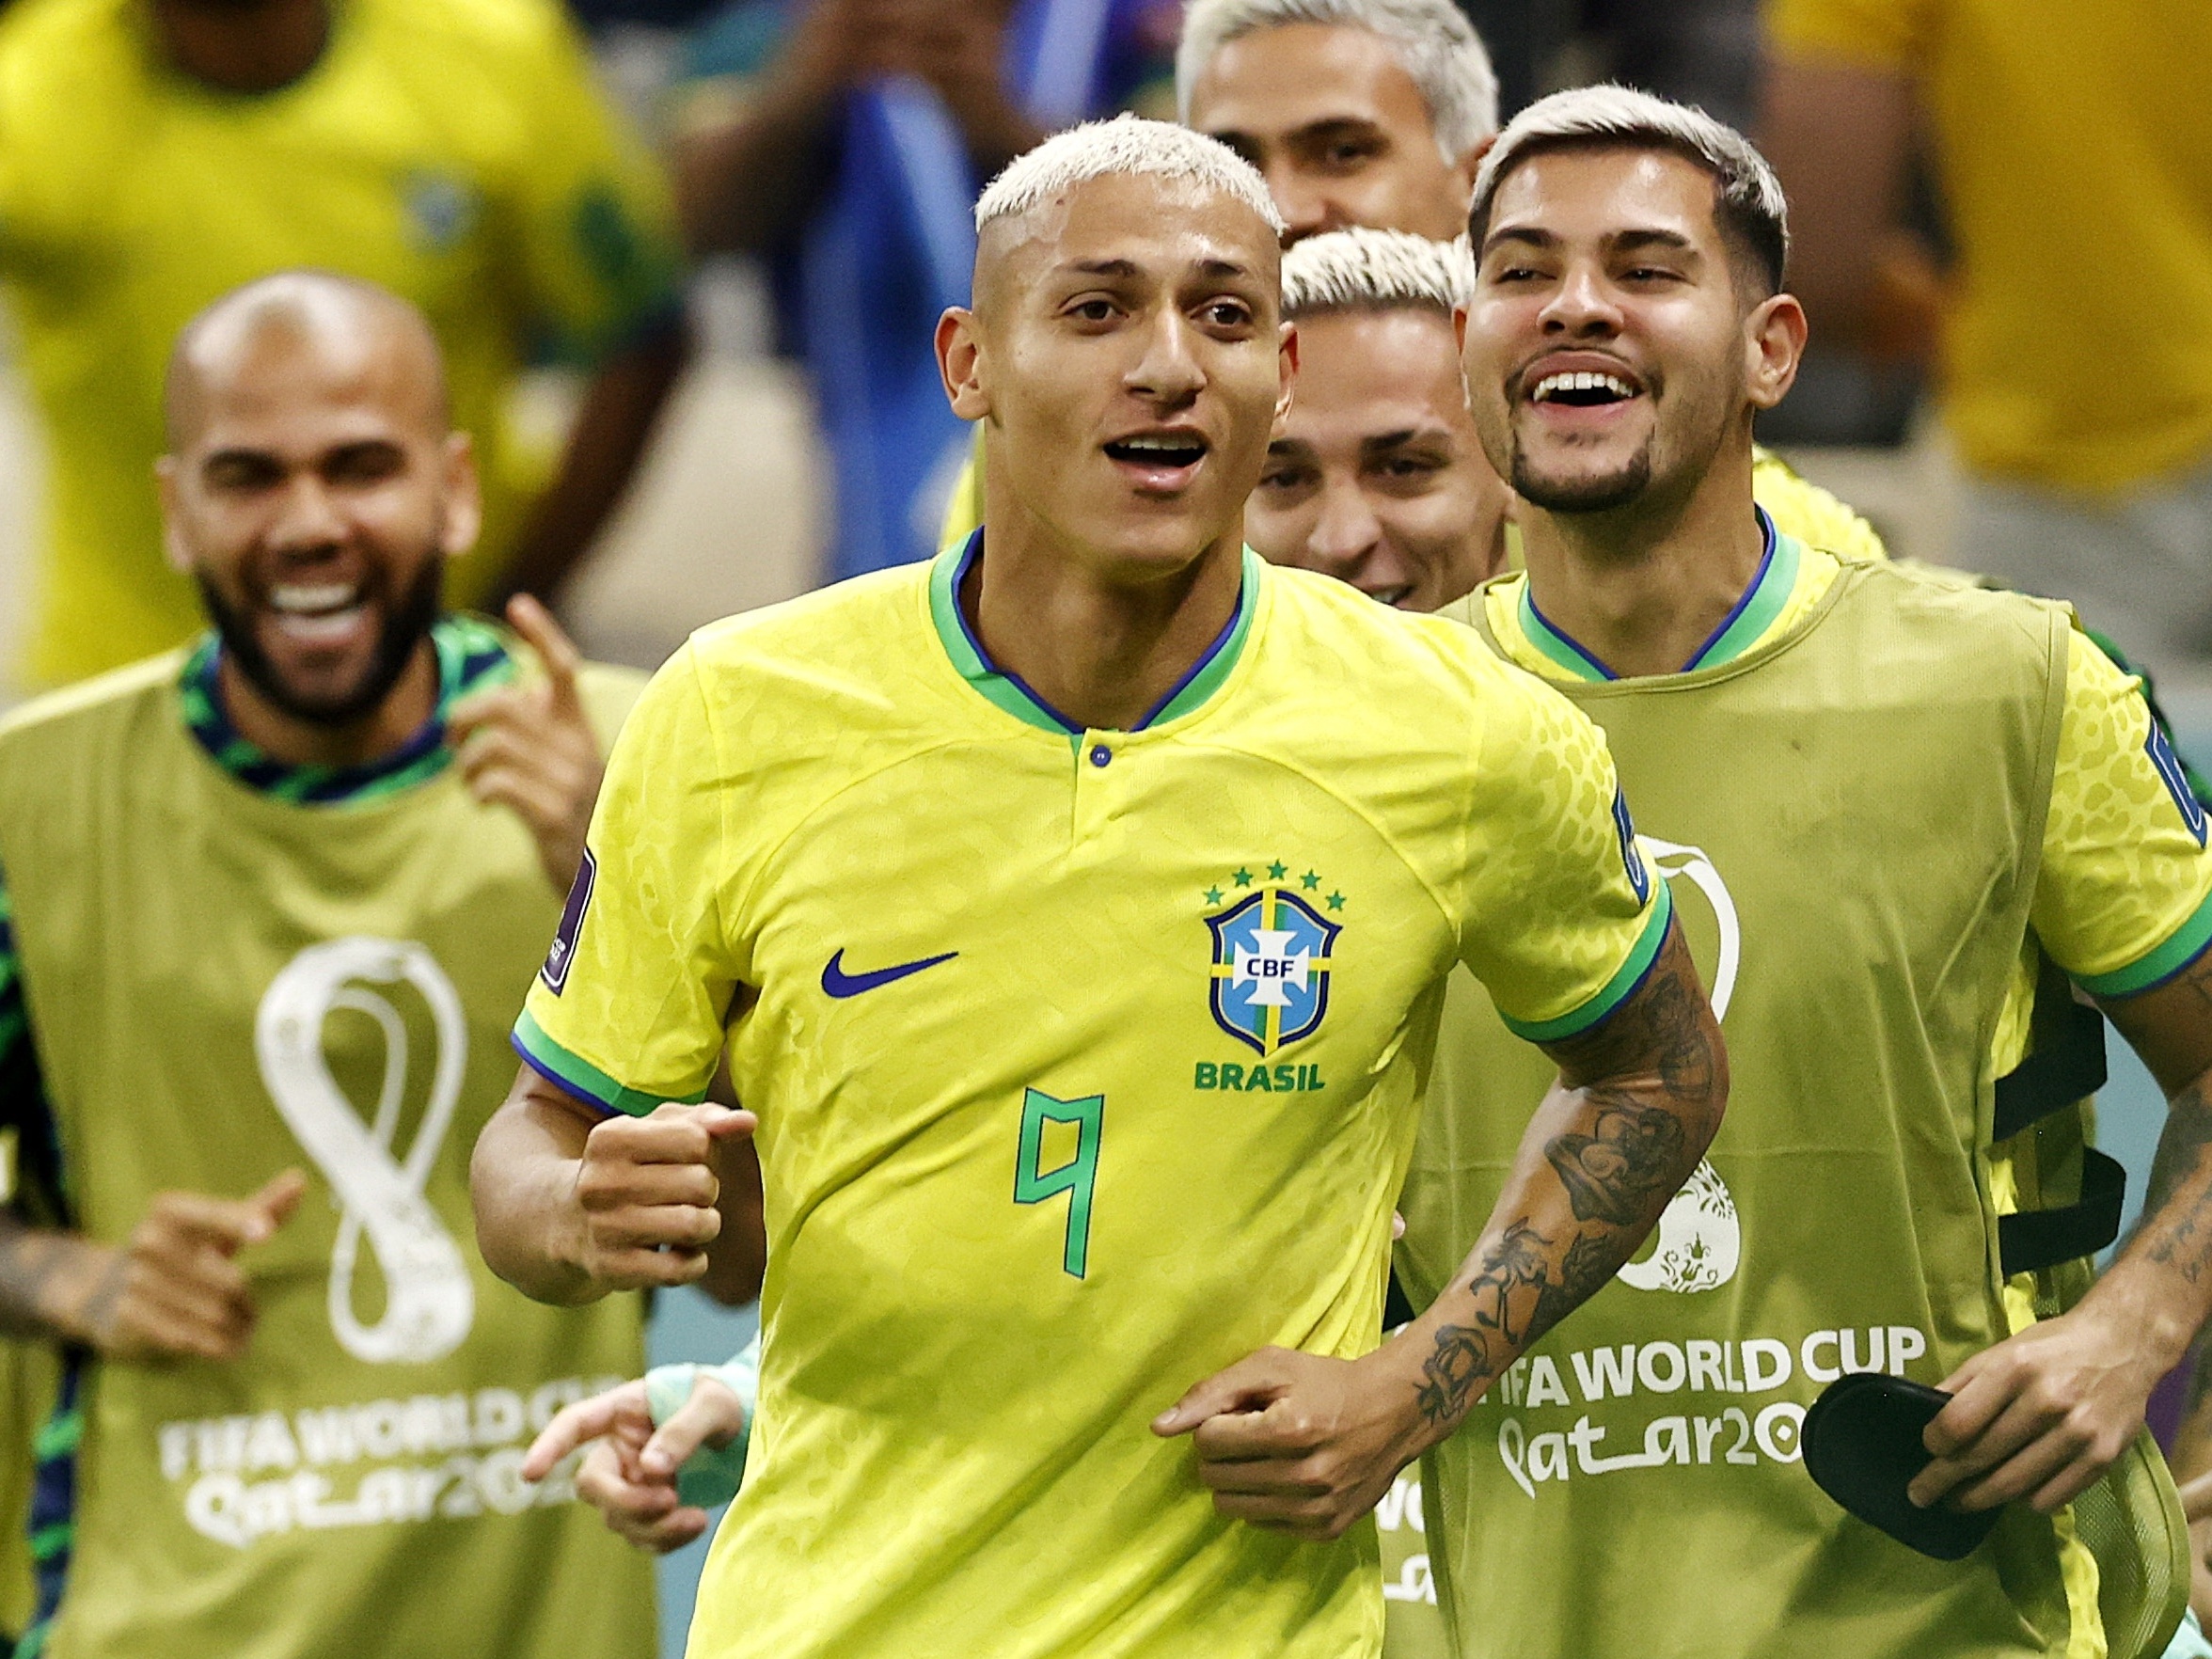 Qual é o próximo jogo do Brasil na Copa do Mundo?, jogo com brasil